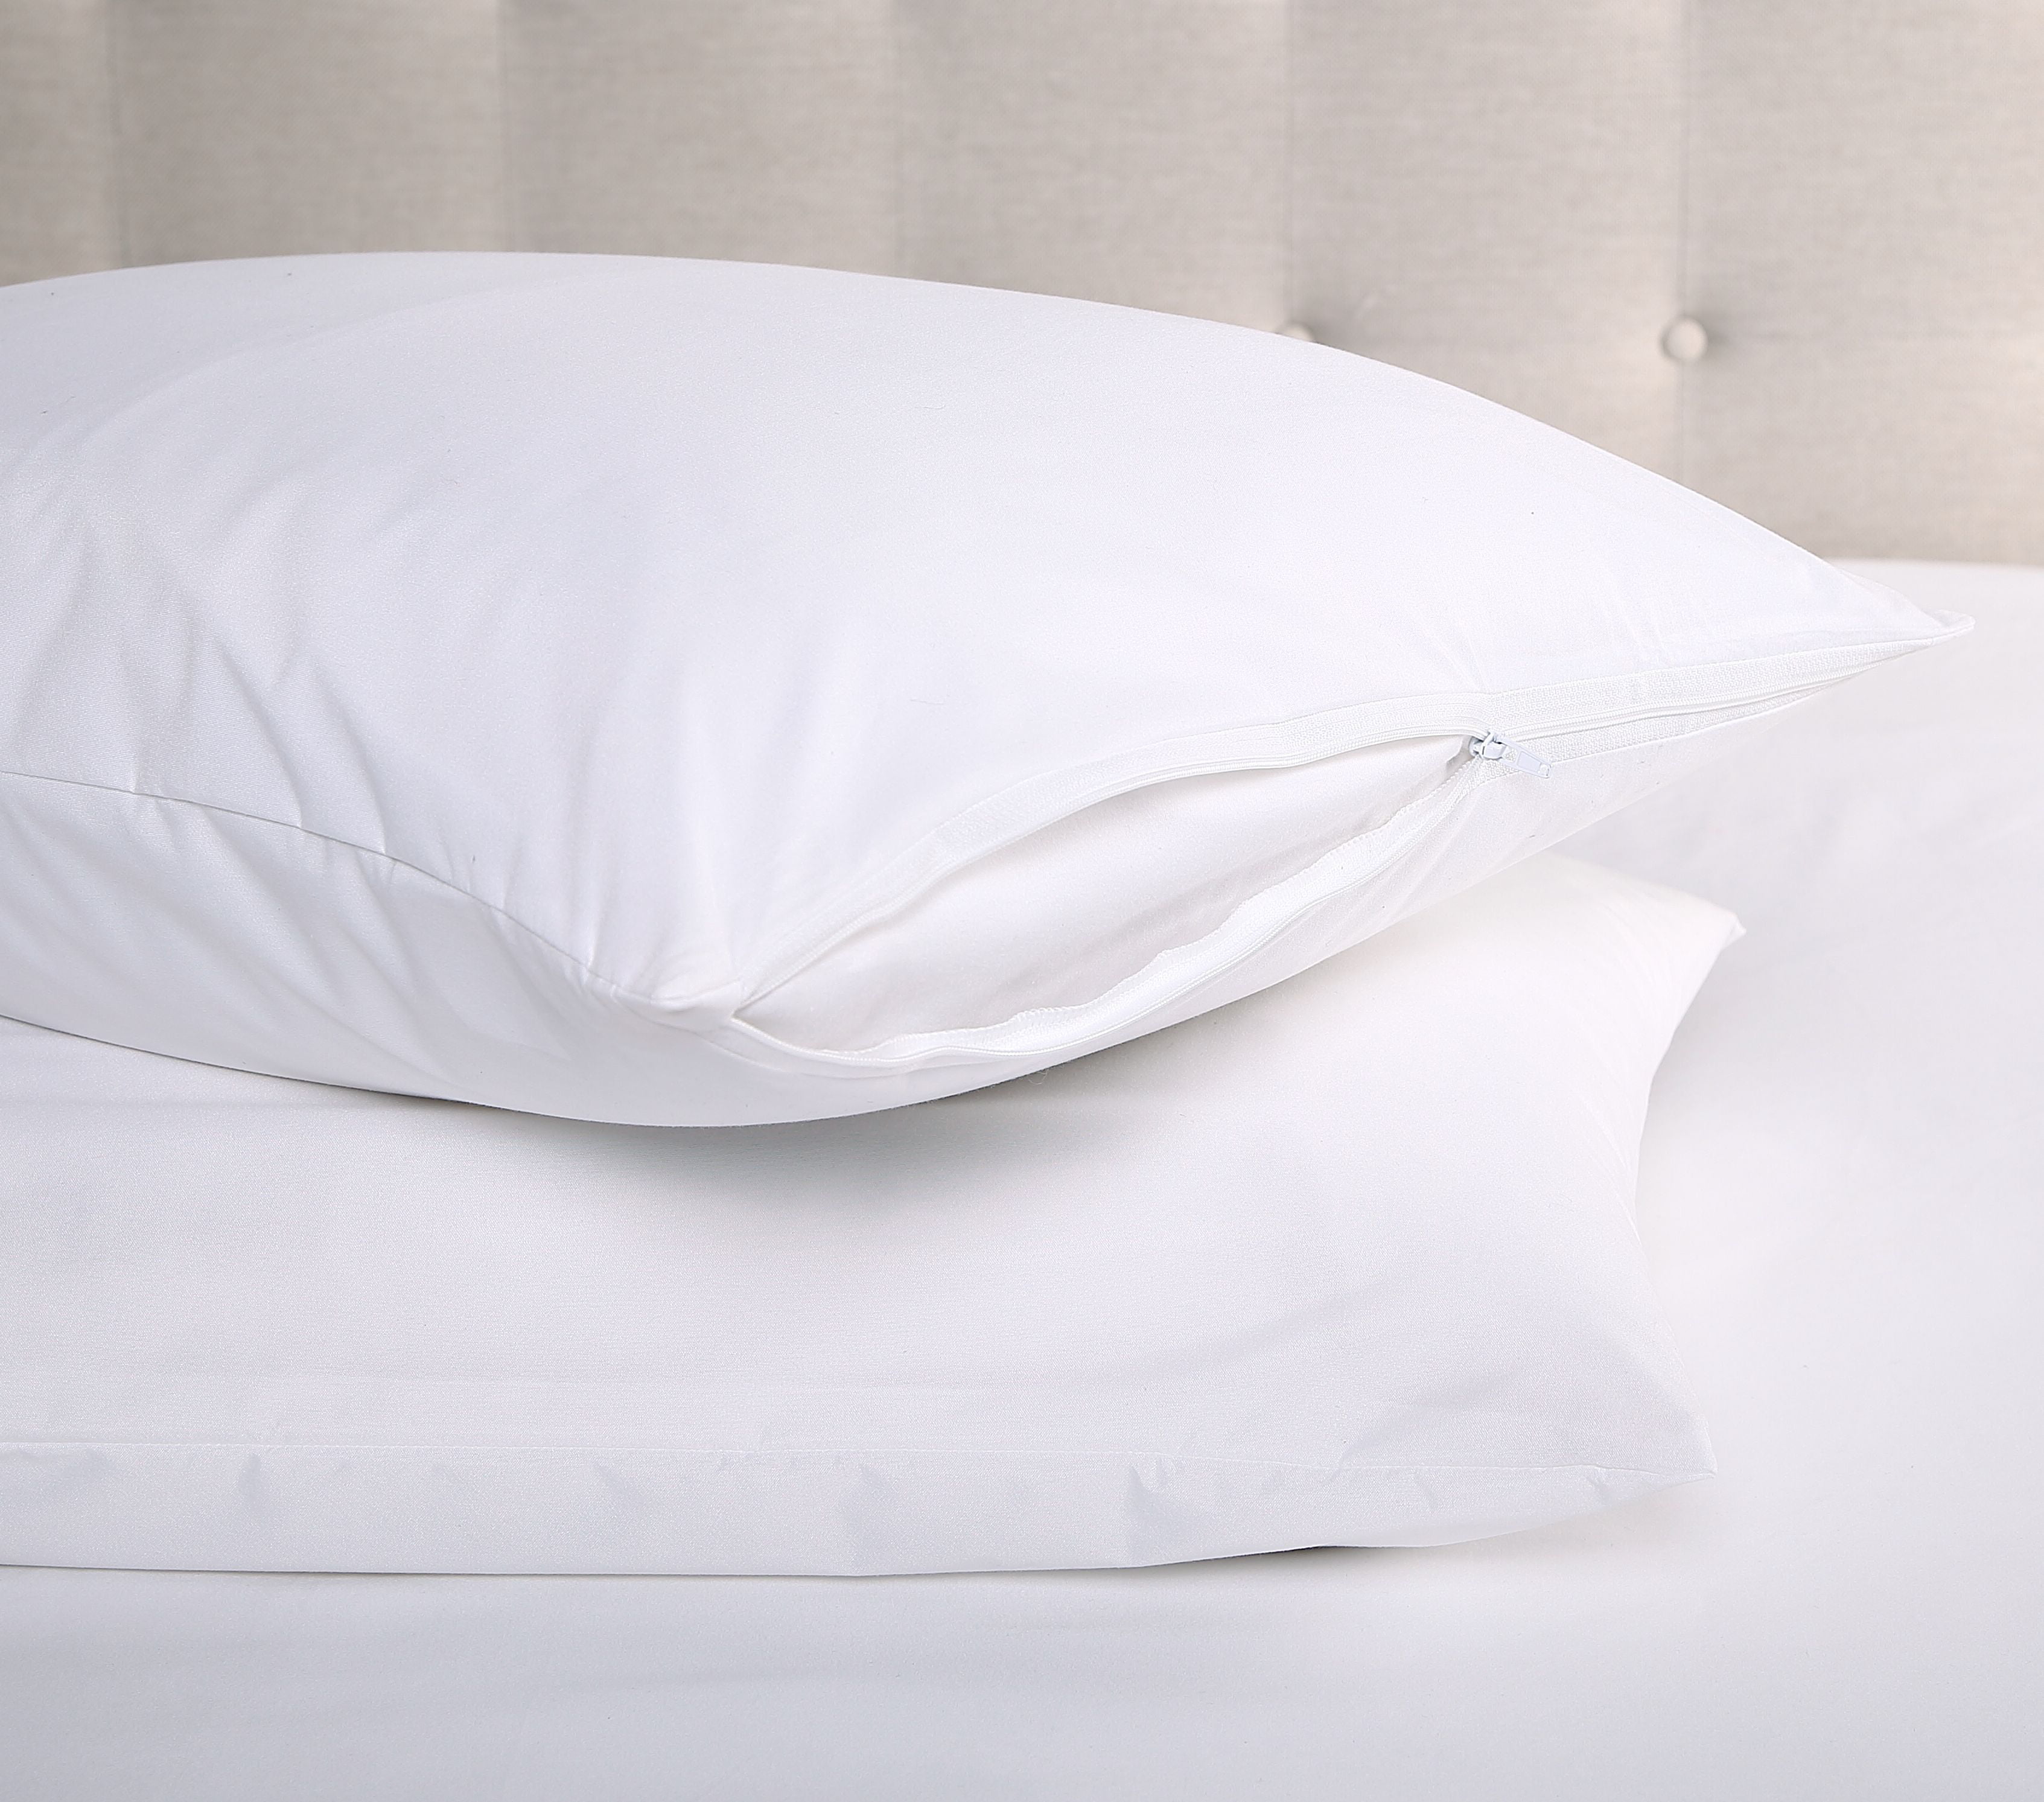 2pc Zipper Microfiber Pillow Protector Waterproof Bed Bug Proof Hypoallergenic